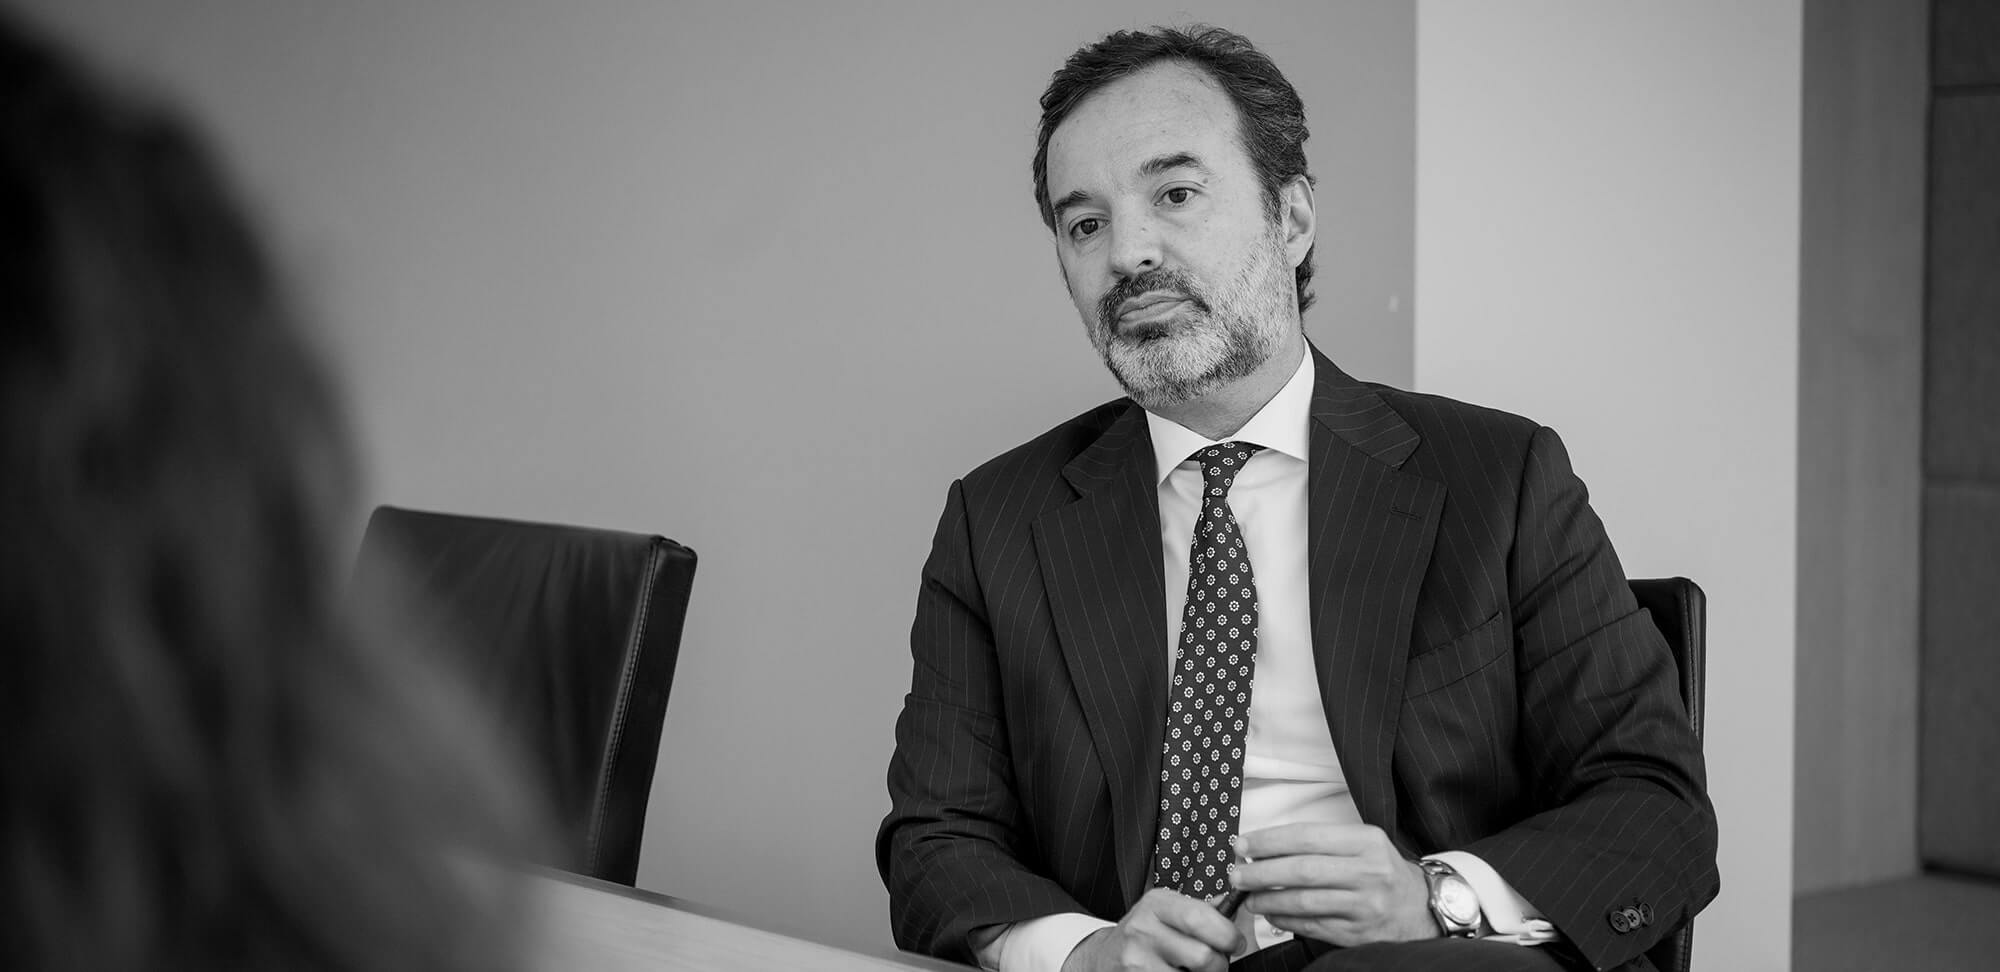 Abogado Fausto Romero-Miura | Socio de Pérez-Llorca, Despacho de abogados